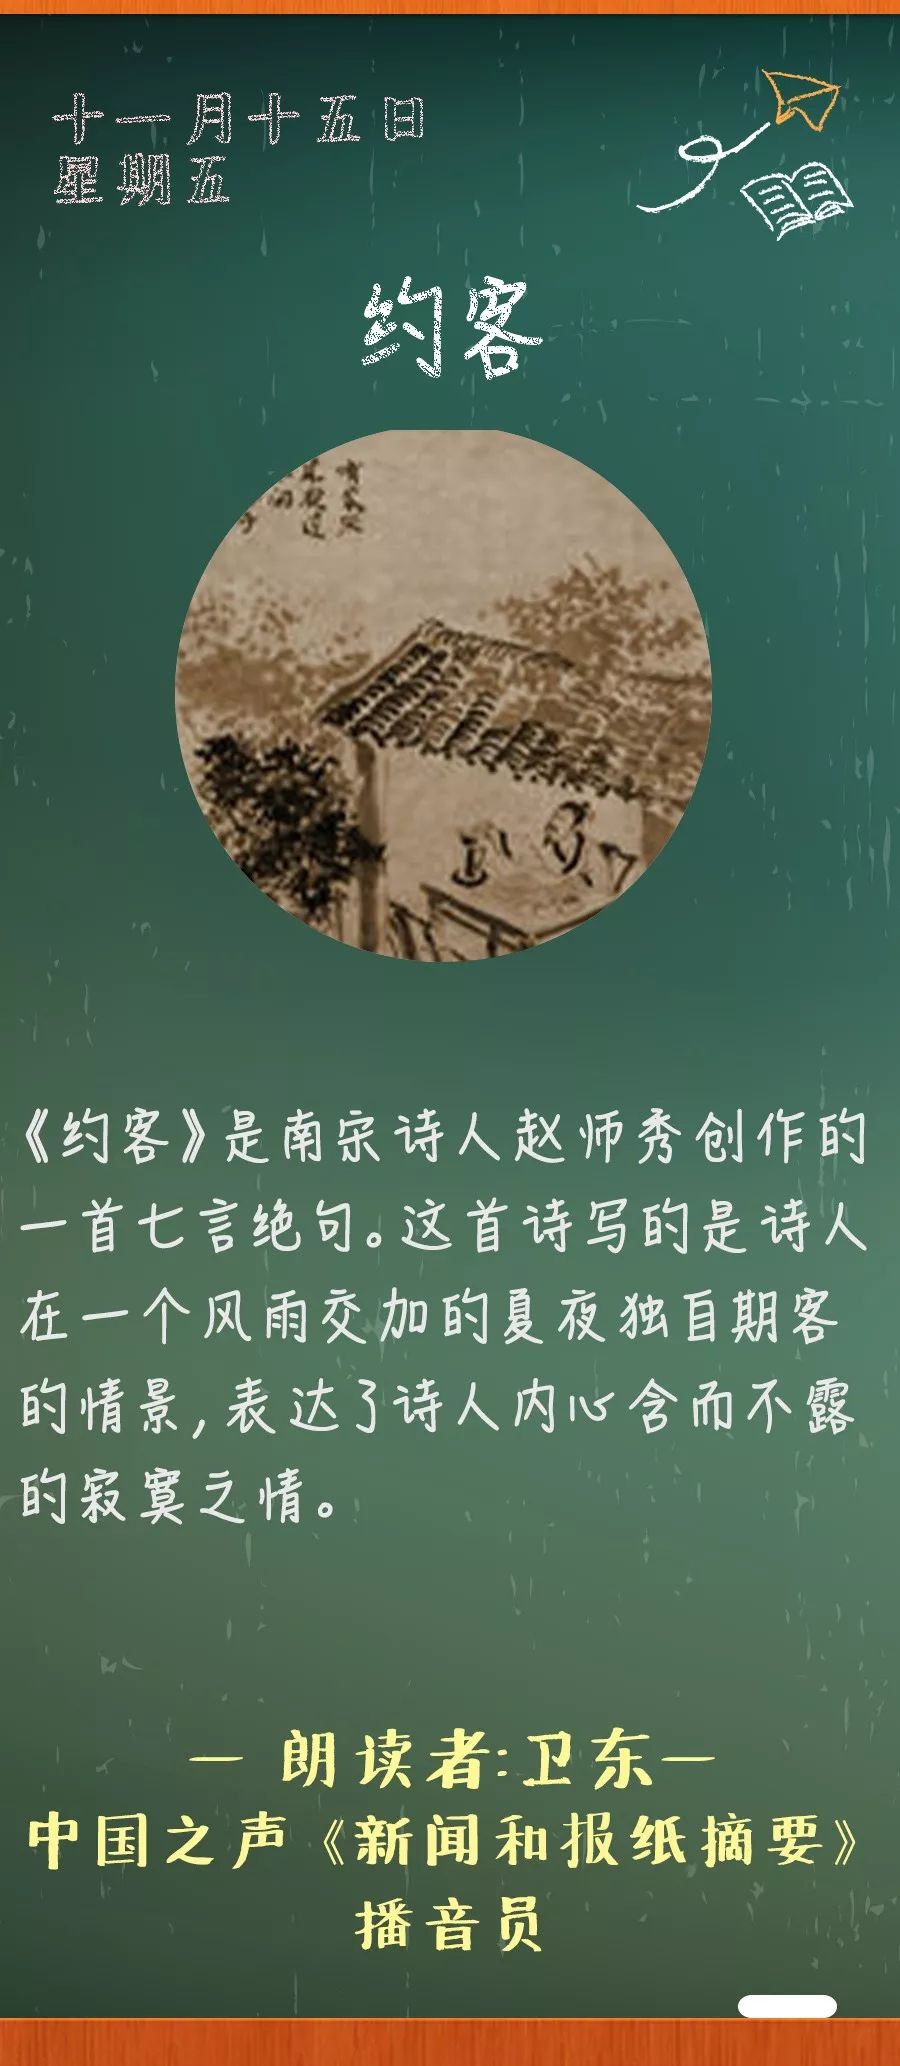 《语文》第6册 人教1988年版作者简介《约客》是南宋诗人赵师秀创作的